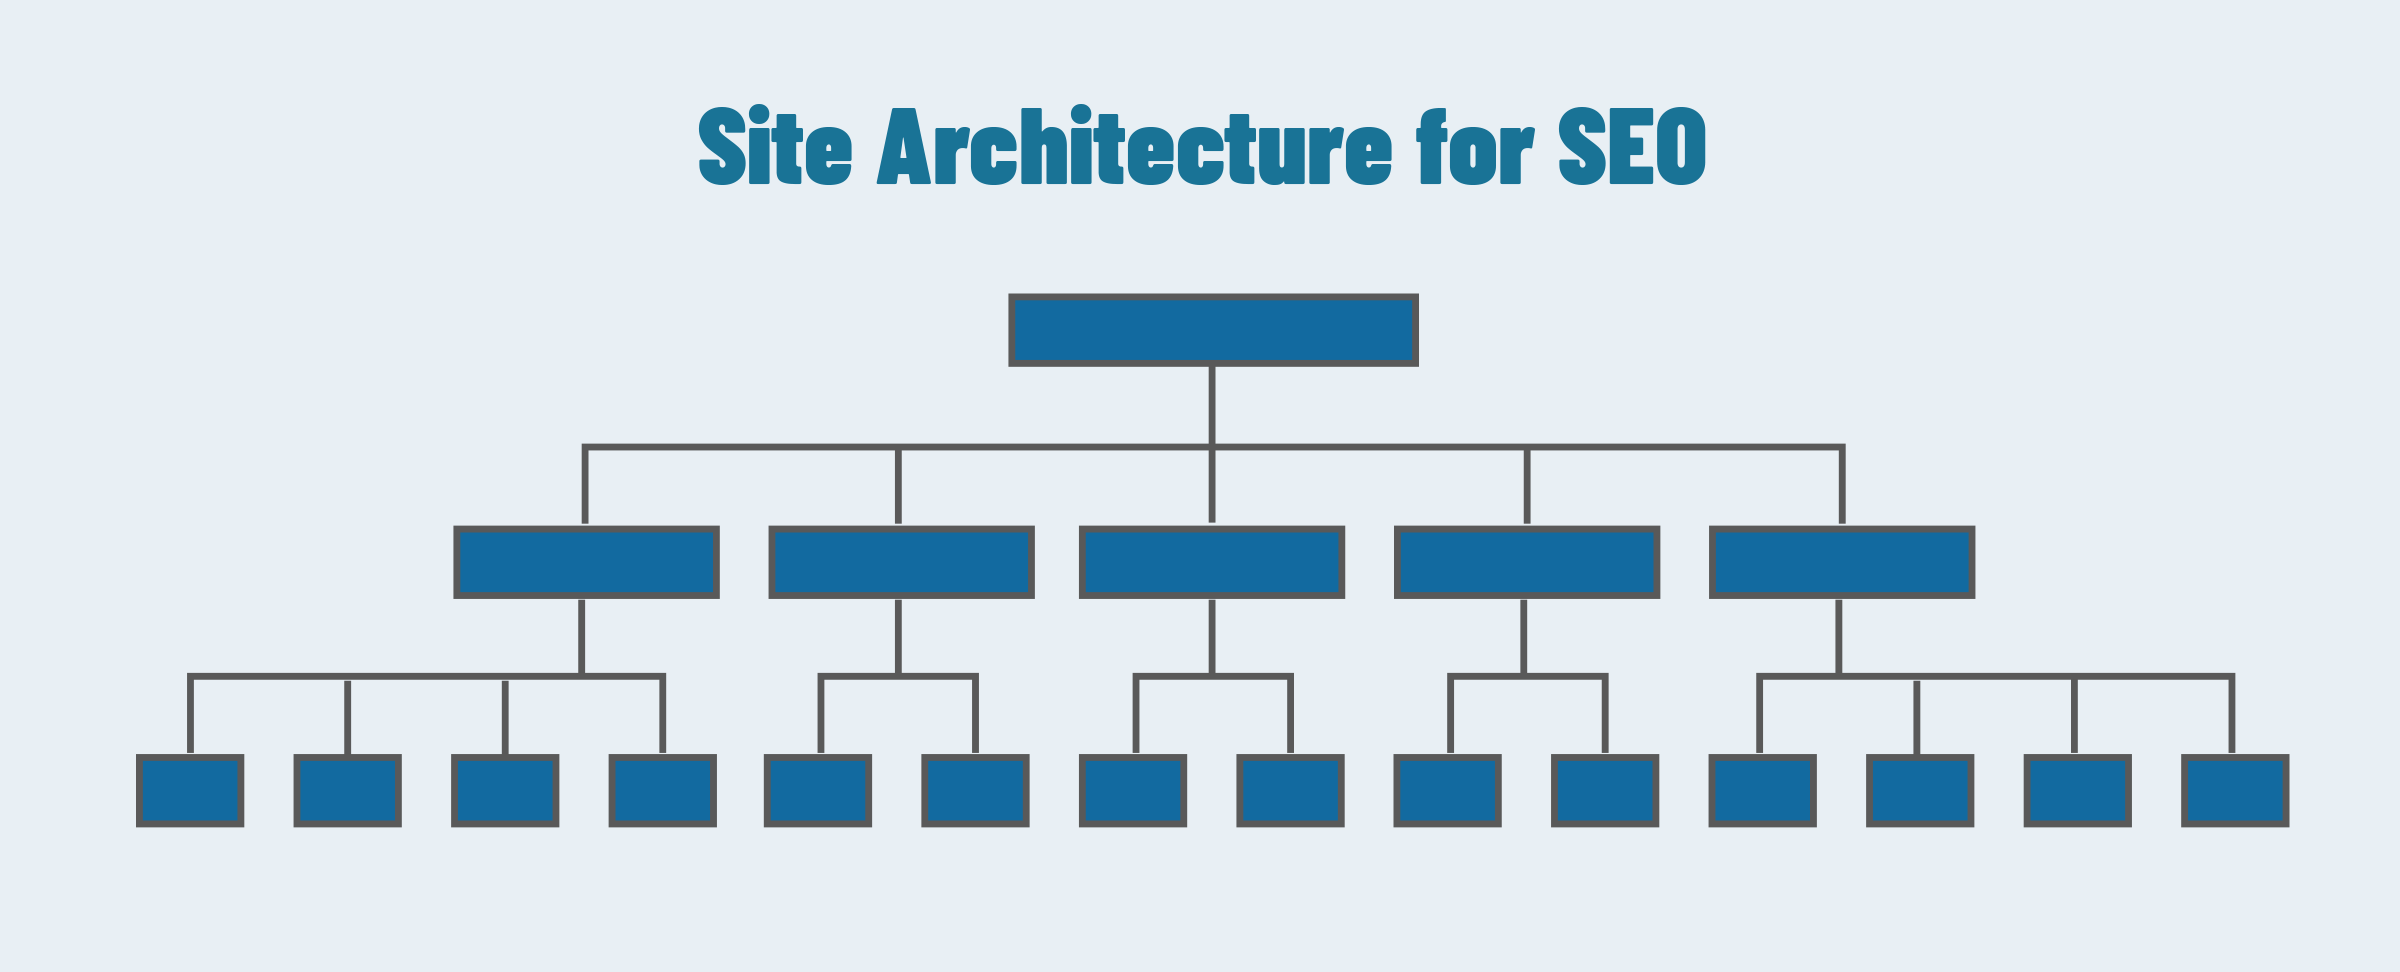 Site Architecture for SEO